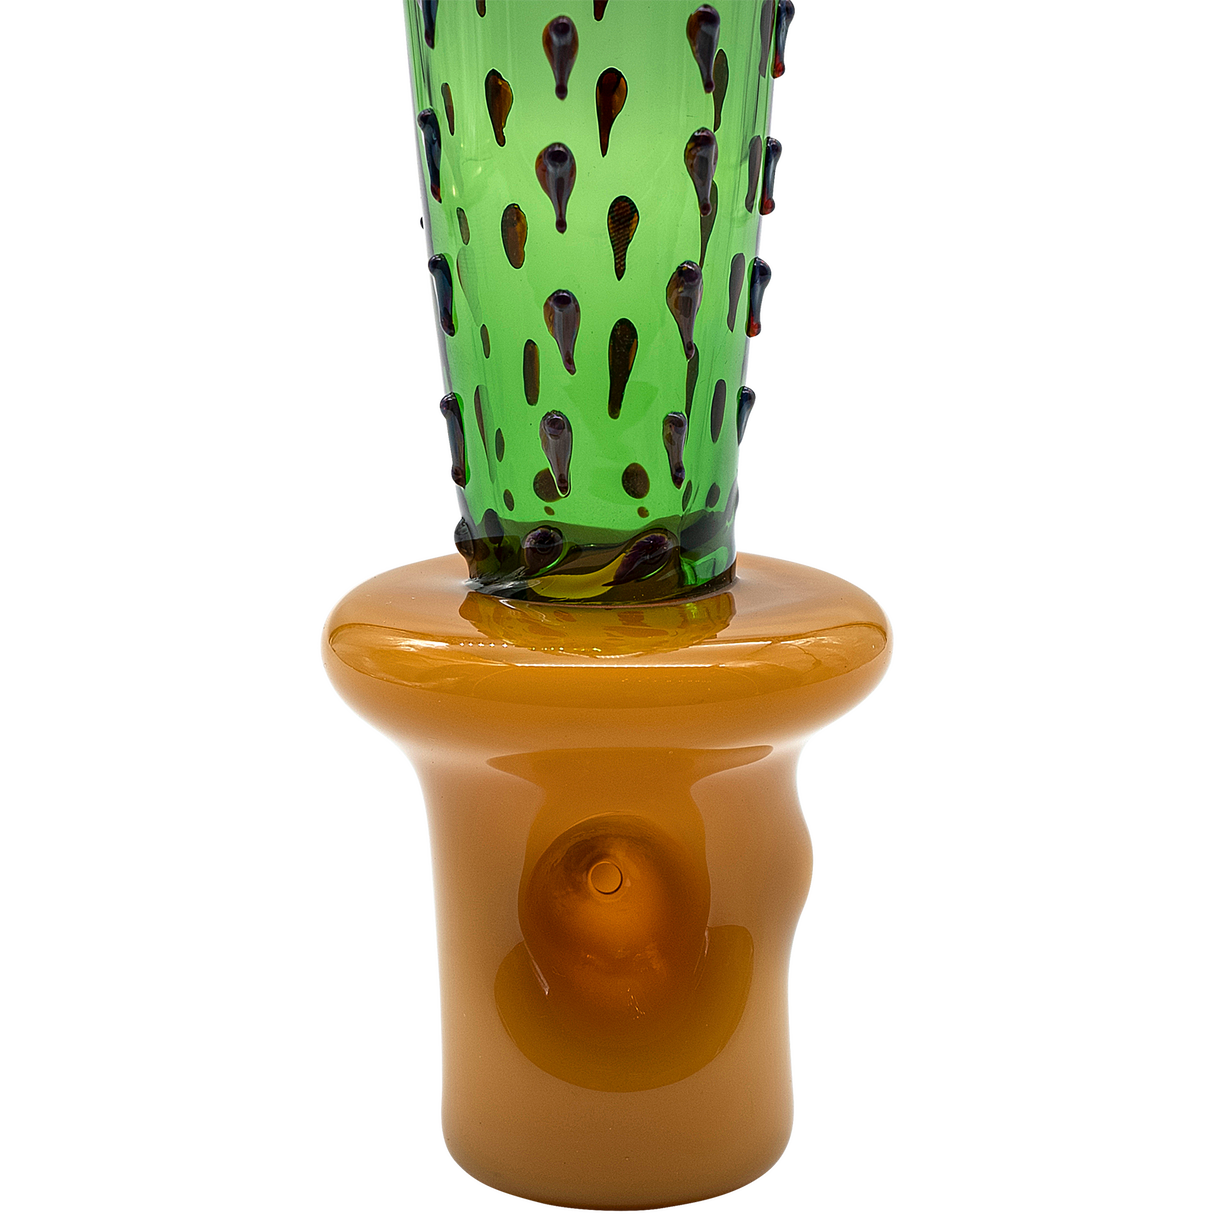 LA Pipes San Pedro Cactus Glass Pipe, 5" Spoon Design, Borosilicate, Green, Front View